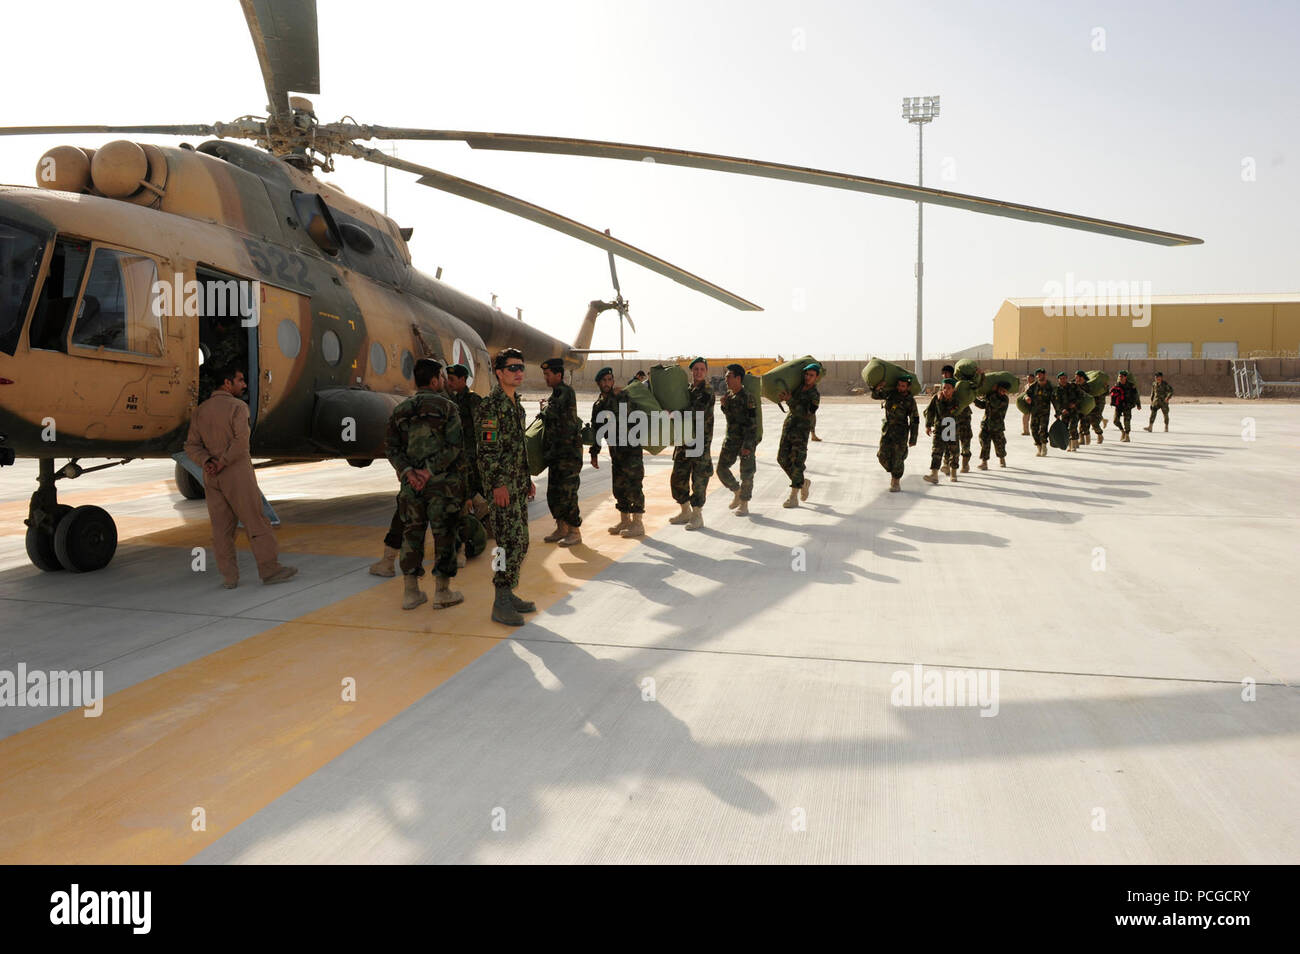 KANDAHAR AIRFIELD, Afghanistan (Sept. 15, 2010) - der afghanischen Nation Armee (ANA) Soldaten ein MI-17 Helikopter in Kandahar Airfield, Afghanistan beginnen. Zusätzlich zur Bereitstellung von Stimmzetteln und Transportieren von wahlbeamten an Standorte, zu gefährlich oder remote für Transport Tage vor den Wahlen, die Kandahar Air Wing ist auch den Transport von ANA Soldaten, die den Schutz von Aufständischen, die Afghanen zu stören bieten die Ausübung ihrer demokratischen Rechte zu stimmen. Stockfoto